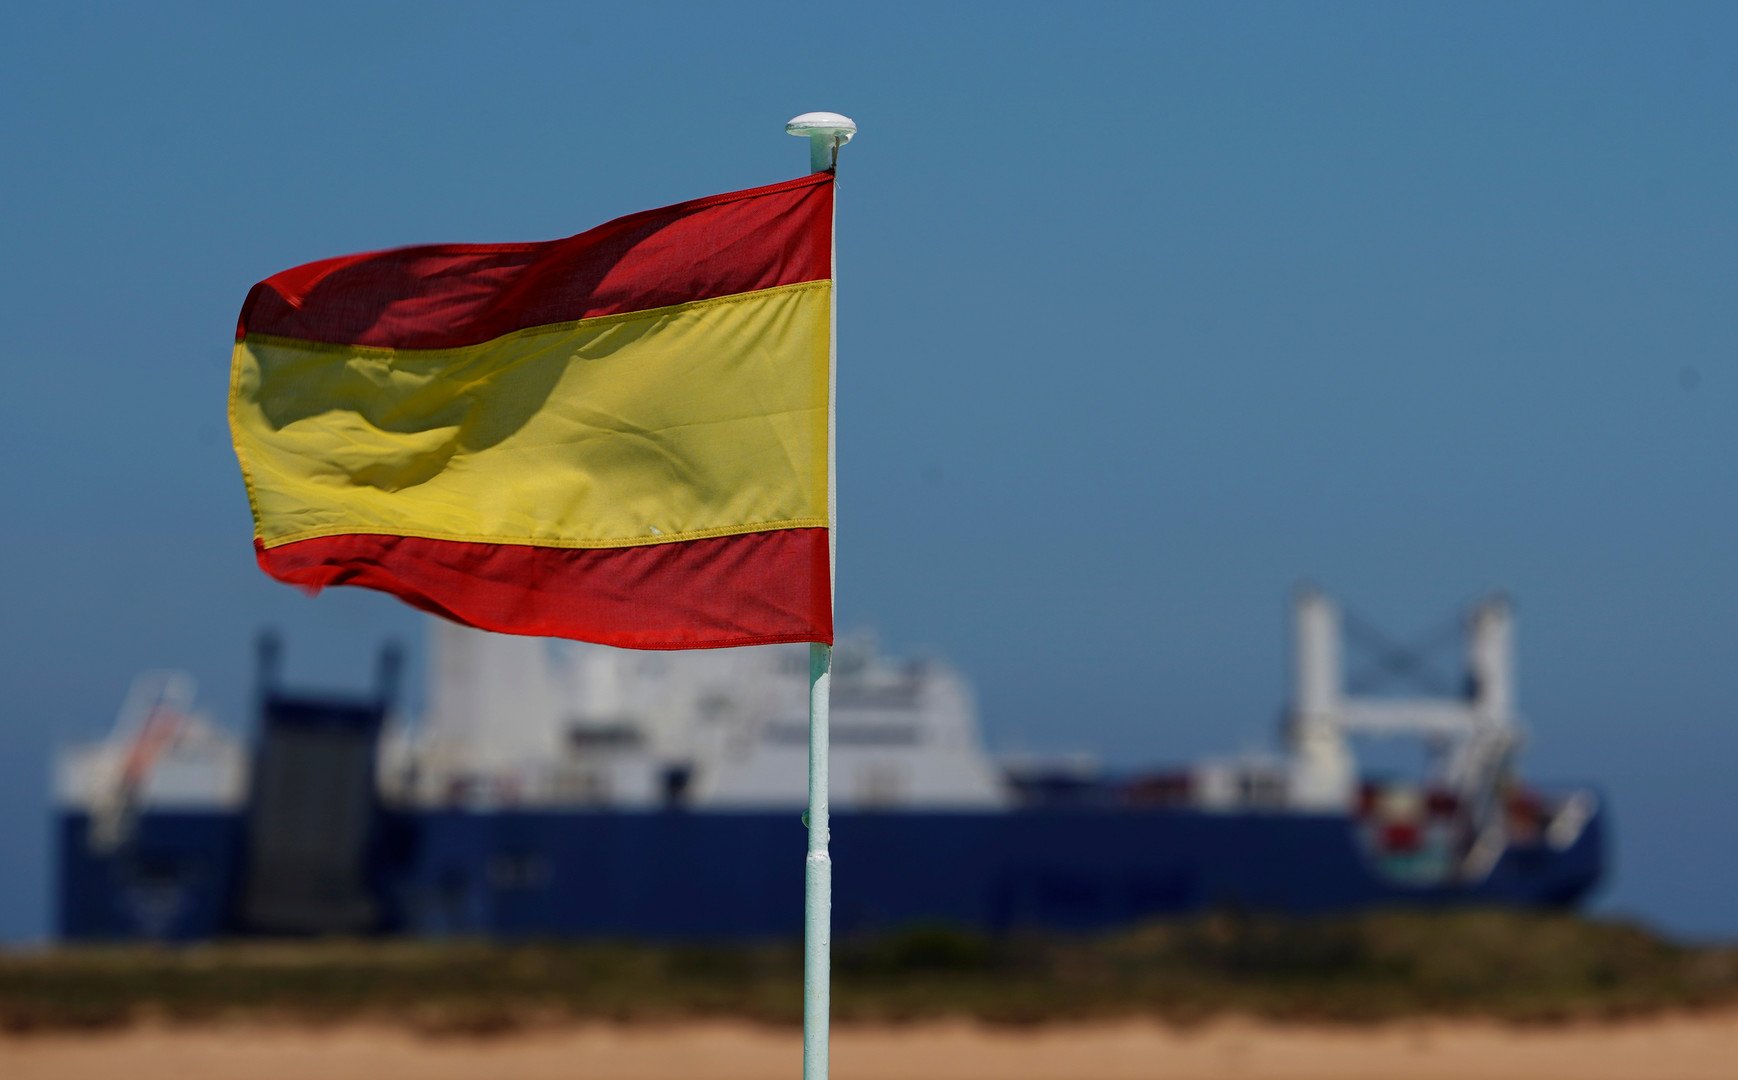 مصدر رسمي إسباني: السفينة السعودية غادرت ميناءنا محملة بمواد تجهيز معارض للإمارات